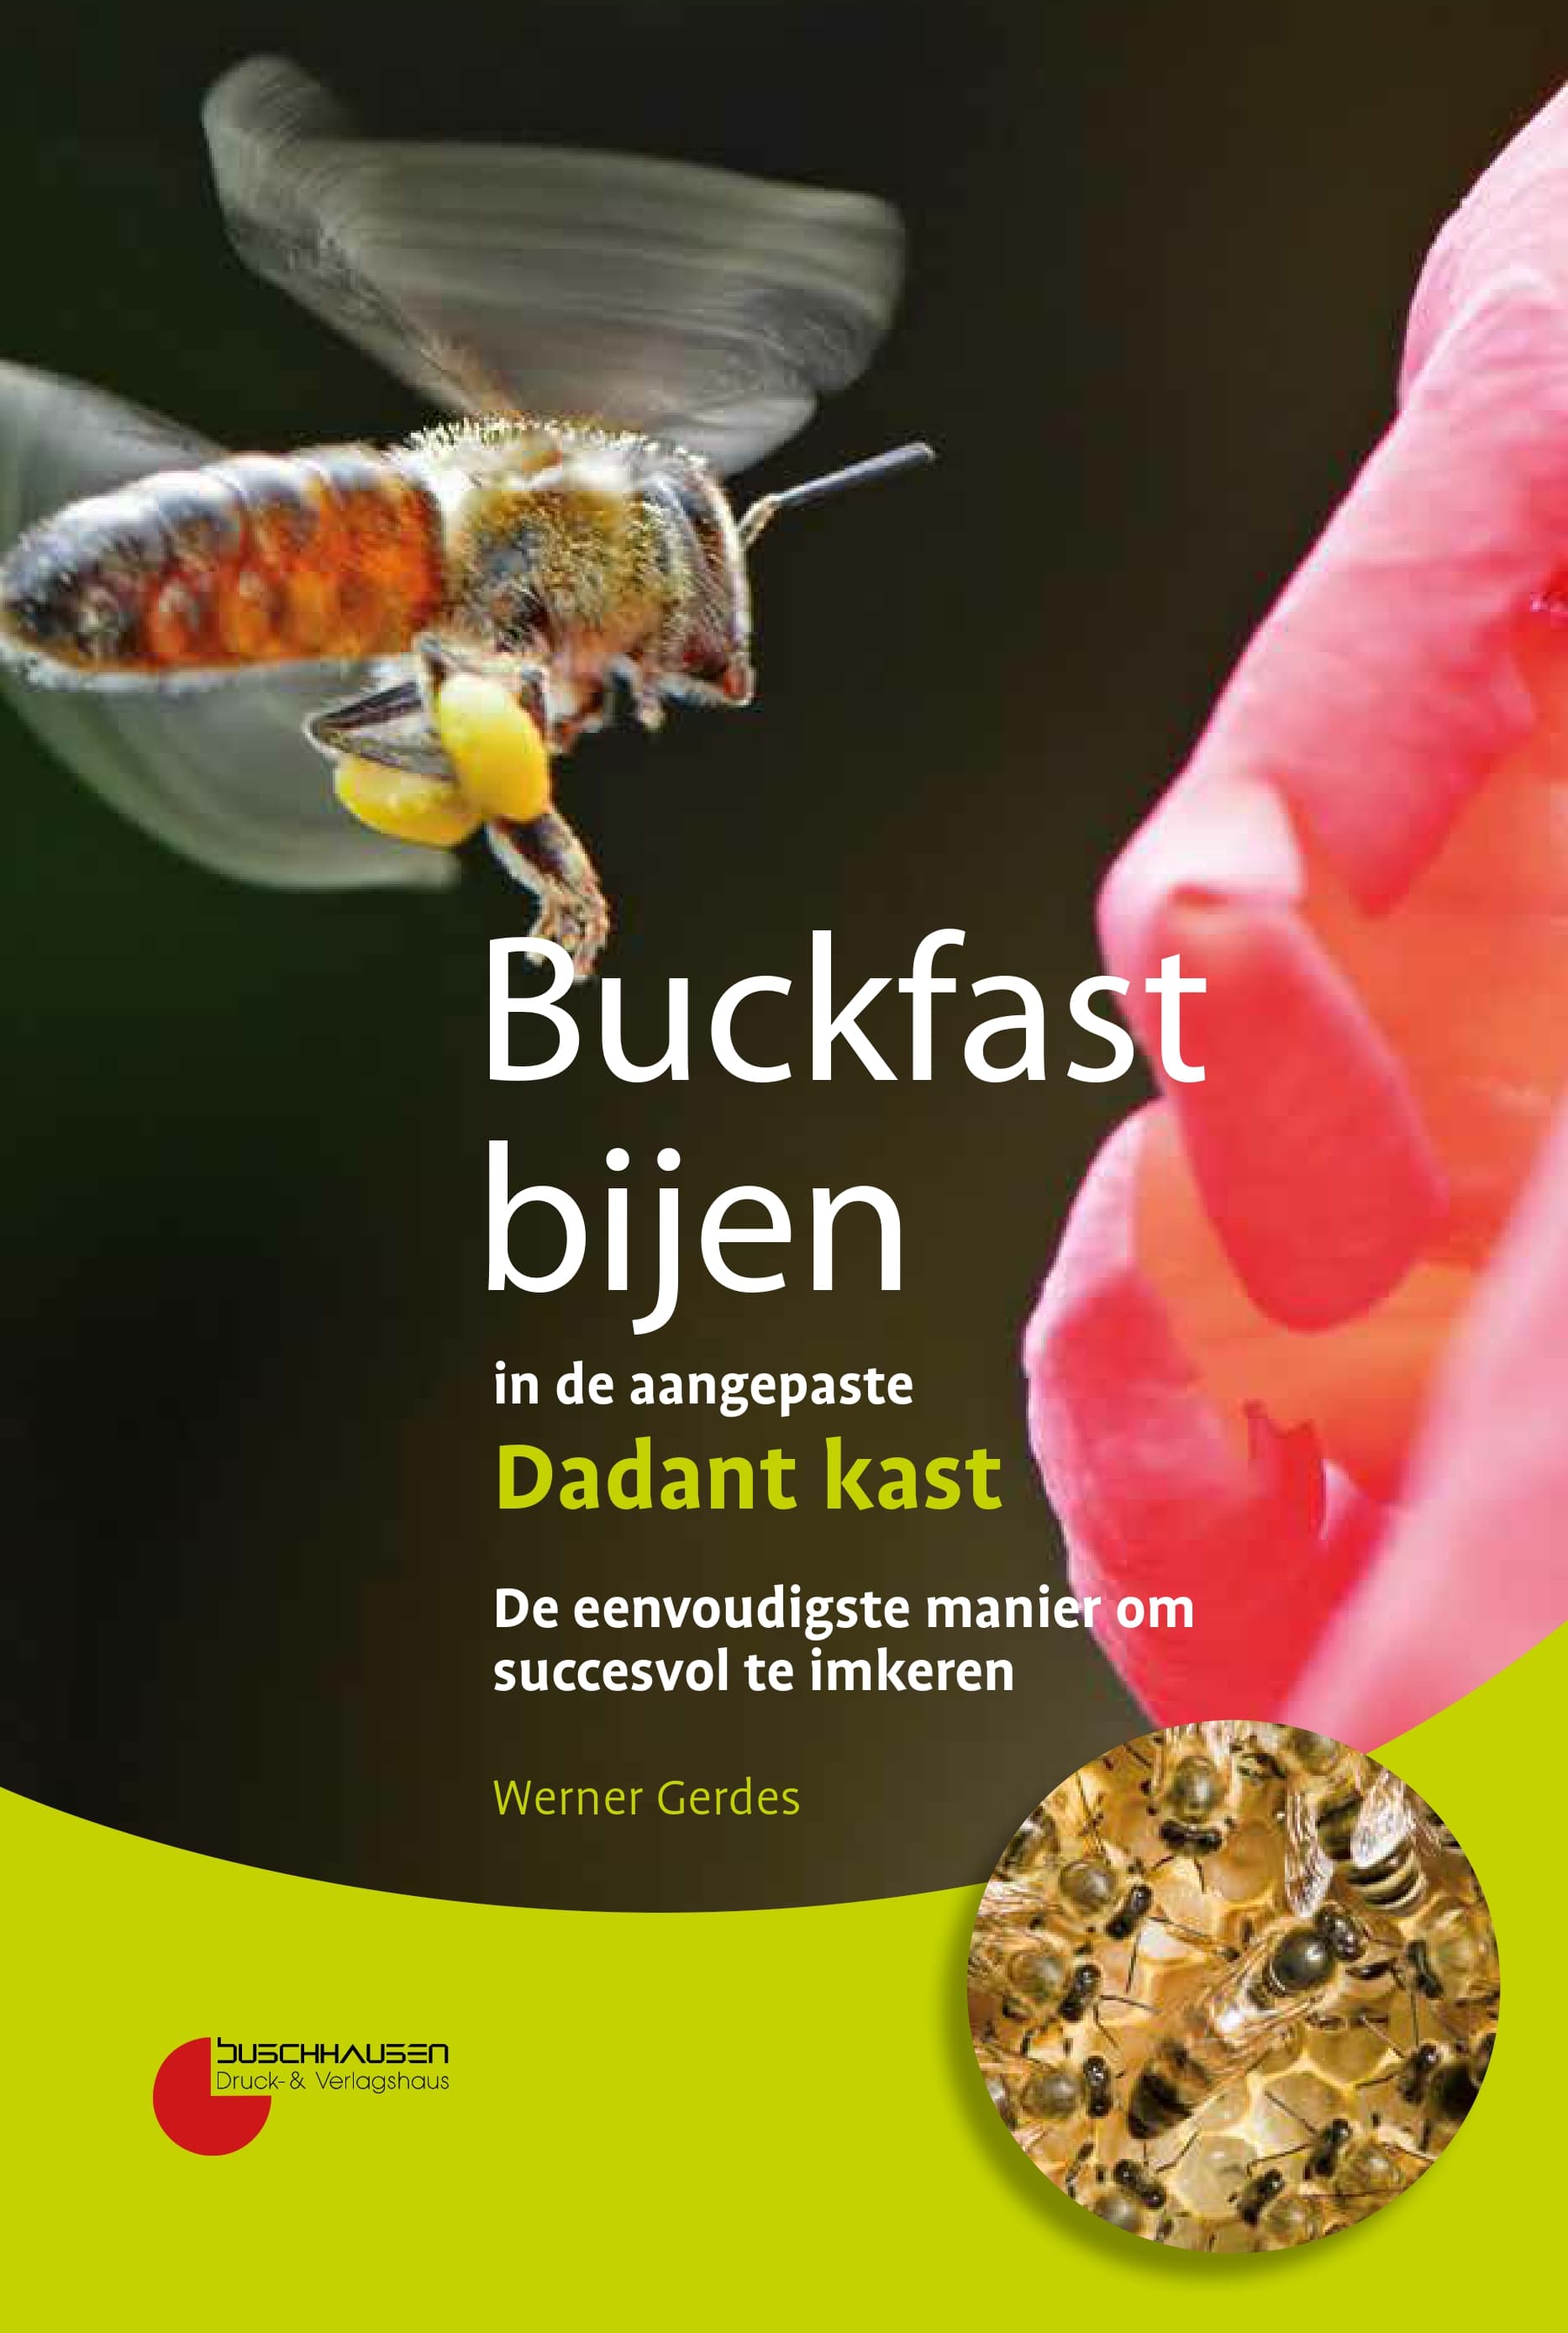 Buckfast bijen in den aangepaste Dadant kast, W. Gerdes, Buschhausen Verlag